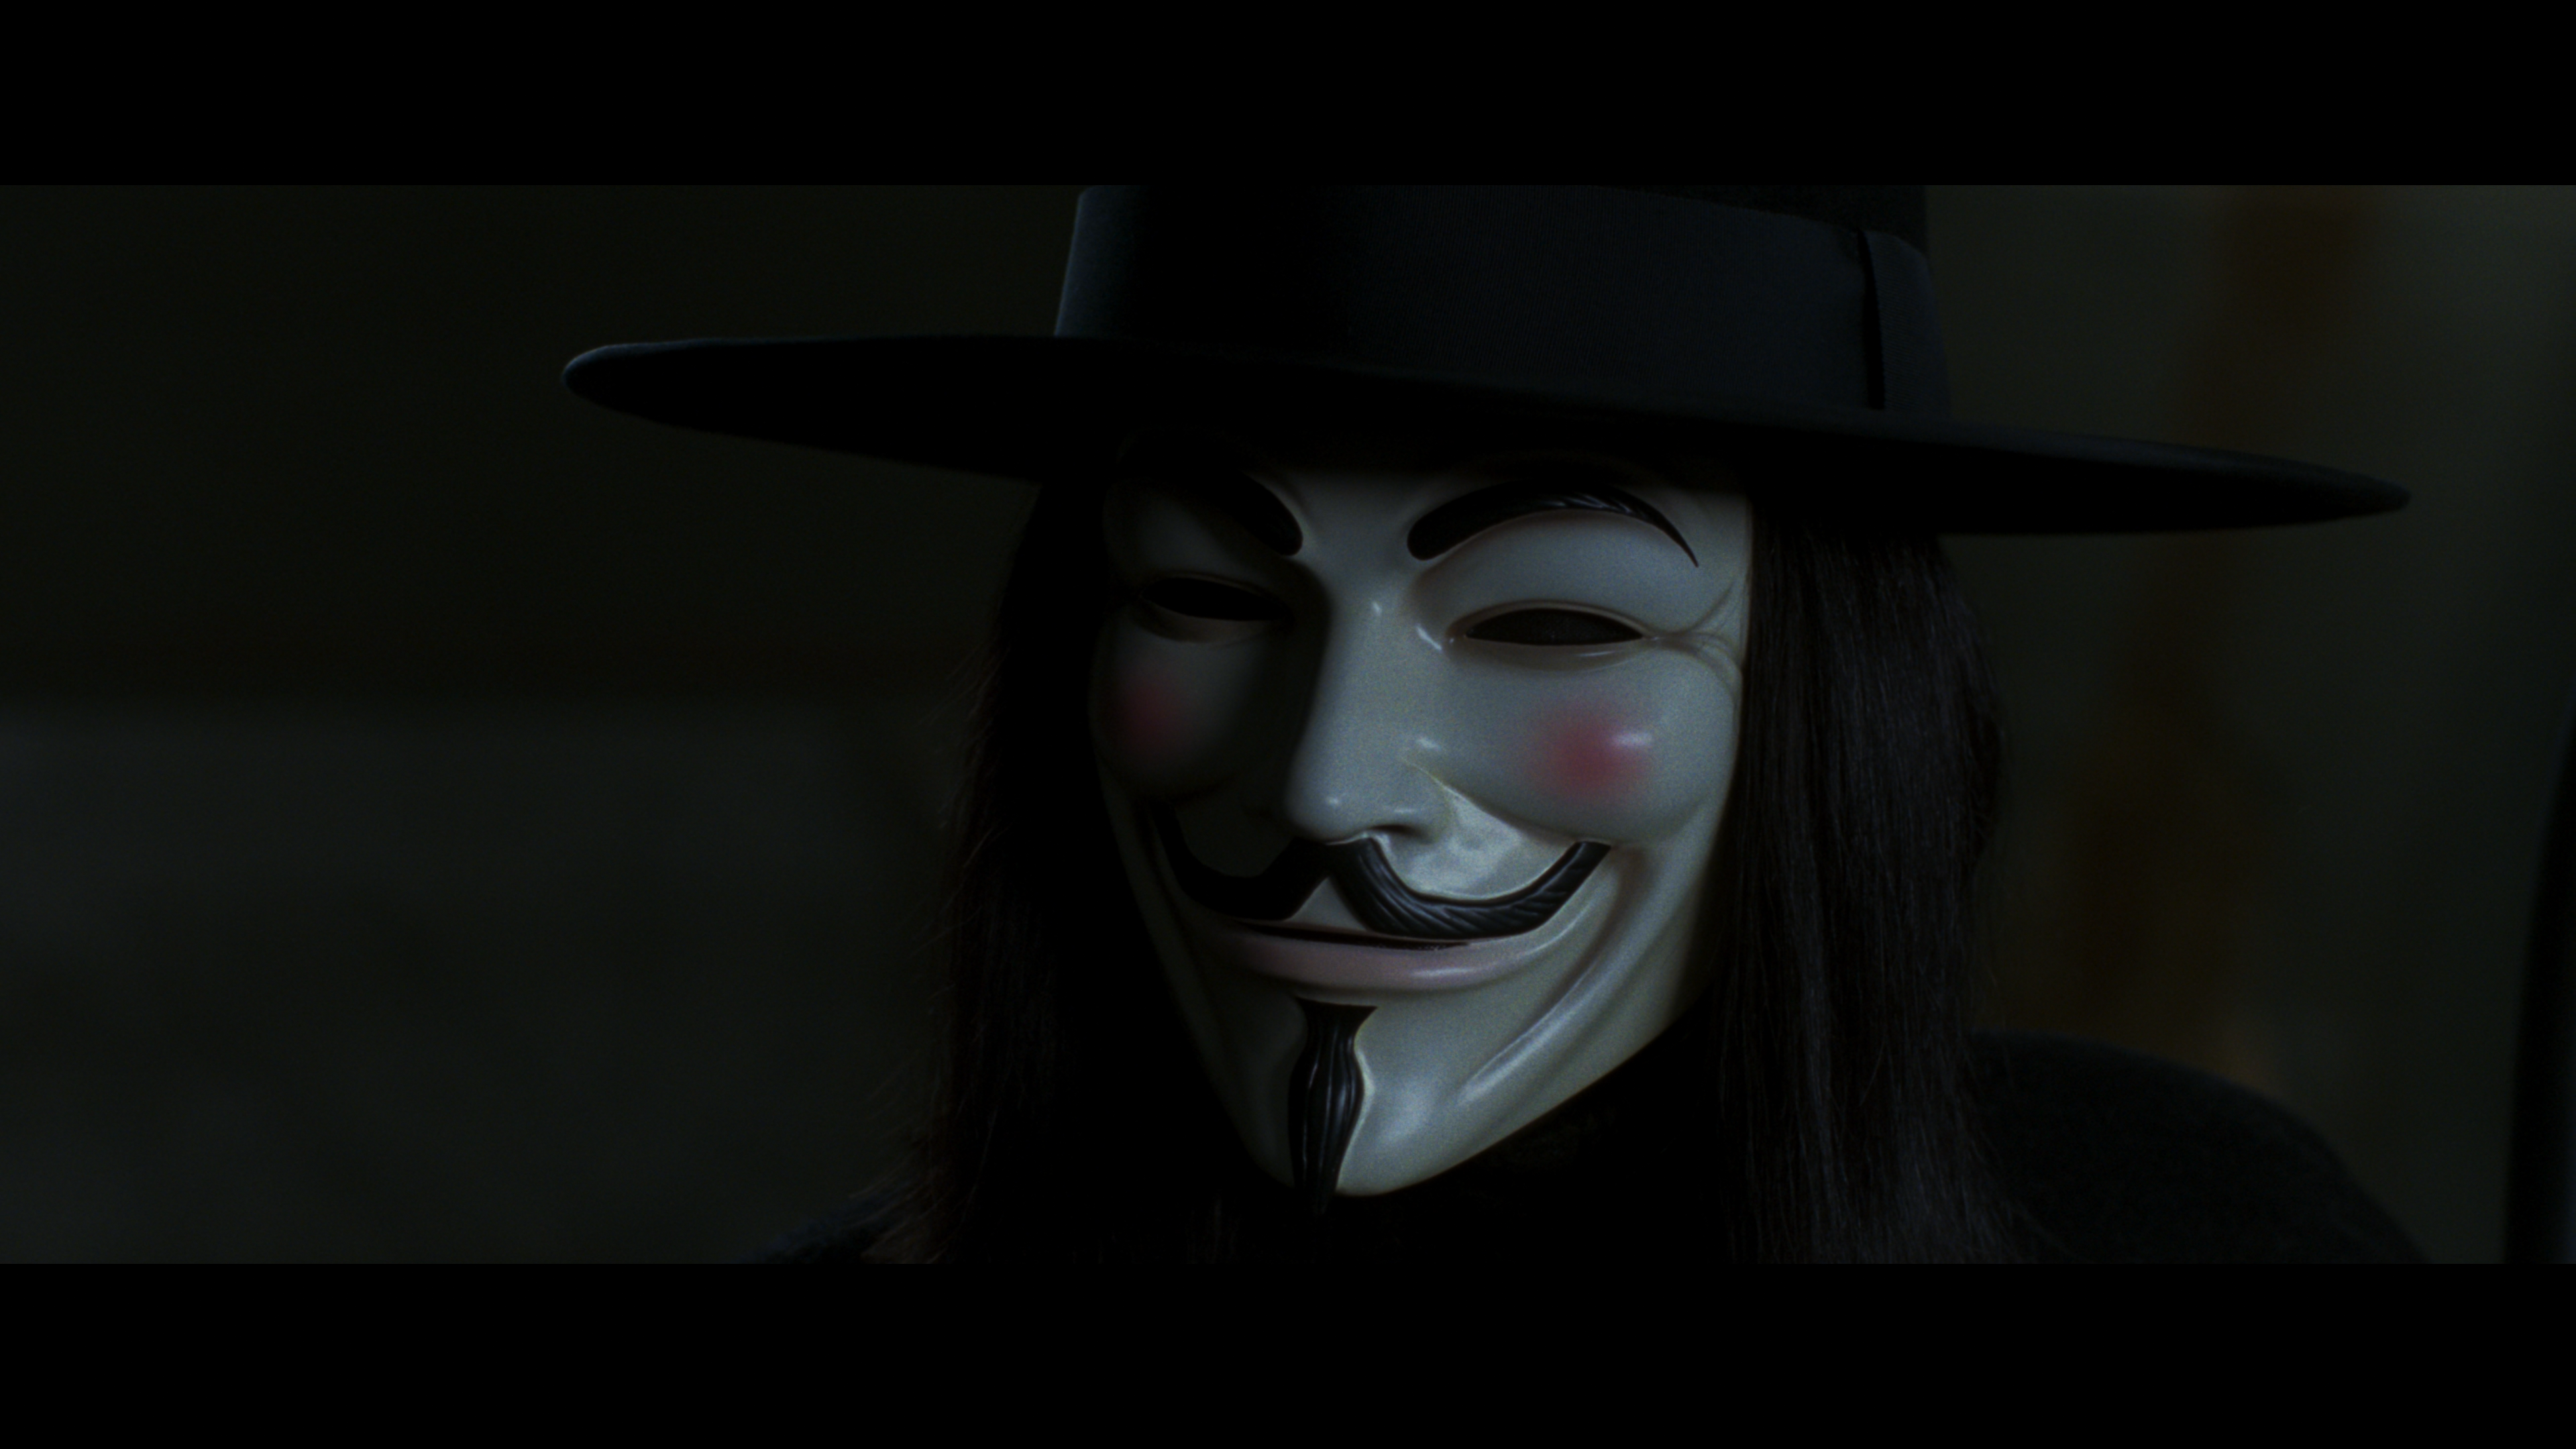 The FilmMaker on X: V for Vendetta. Behind the scenes. Natalie Portman & Hugo  Weaving  / X